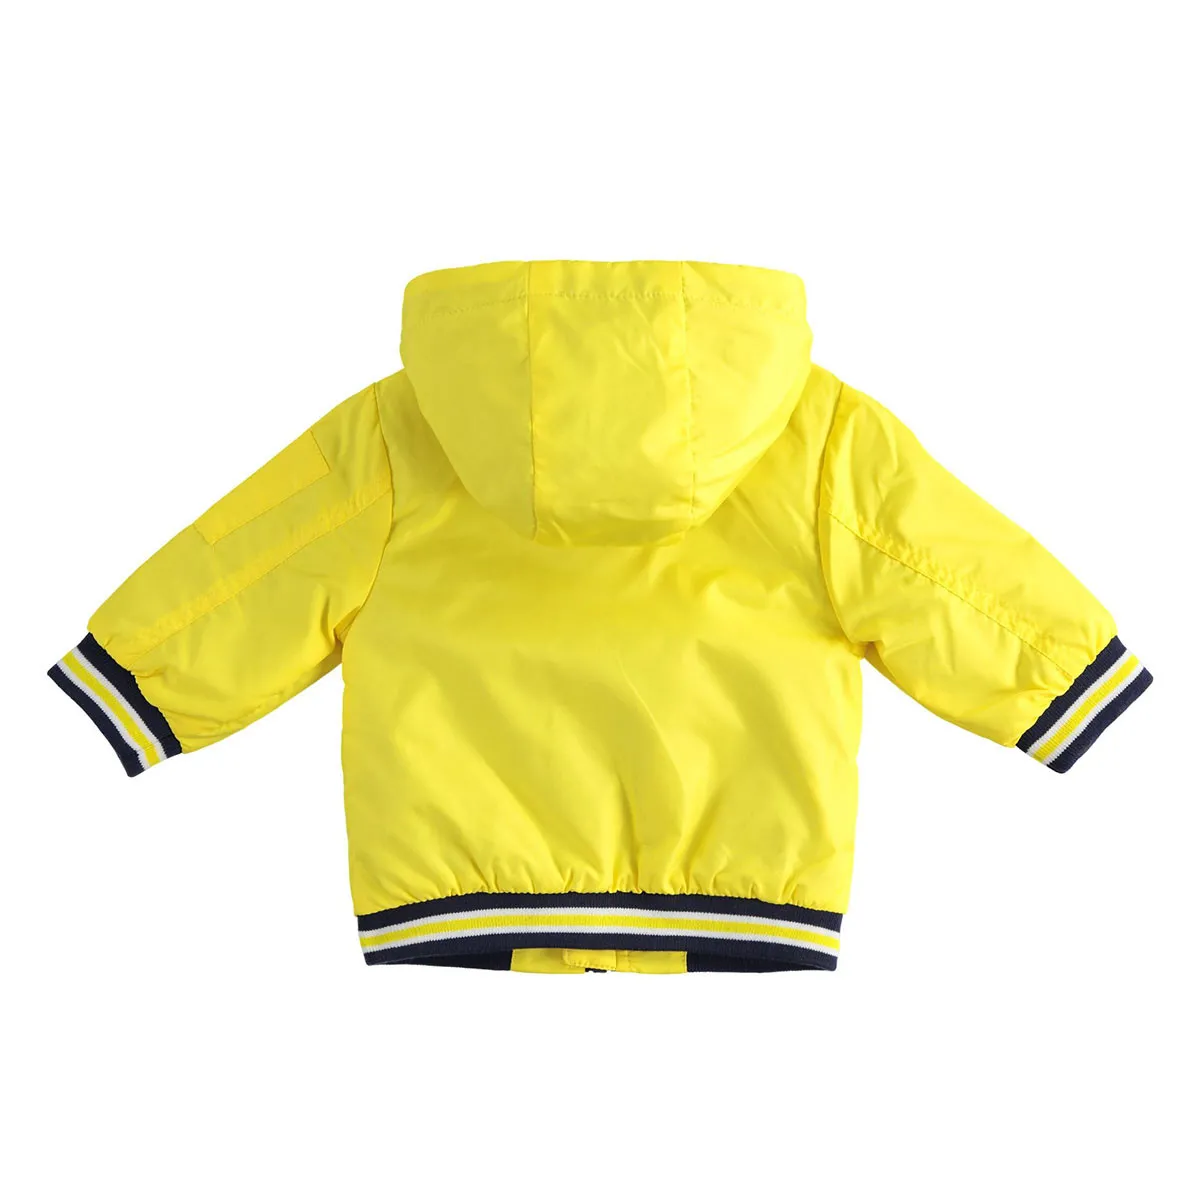 Minibanda jakna, 68-86